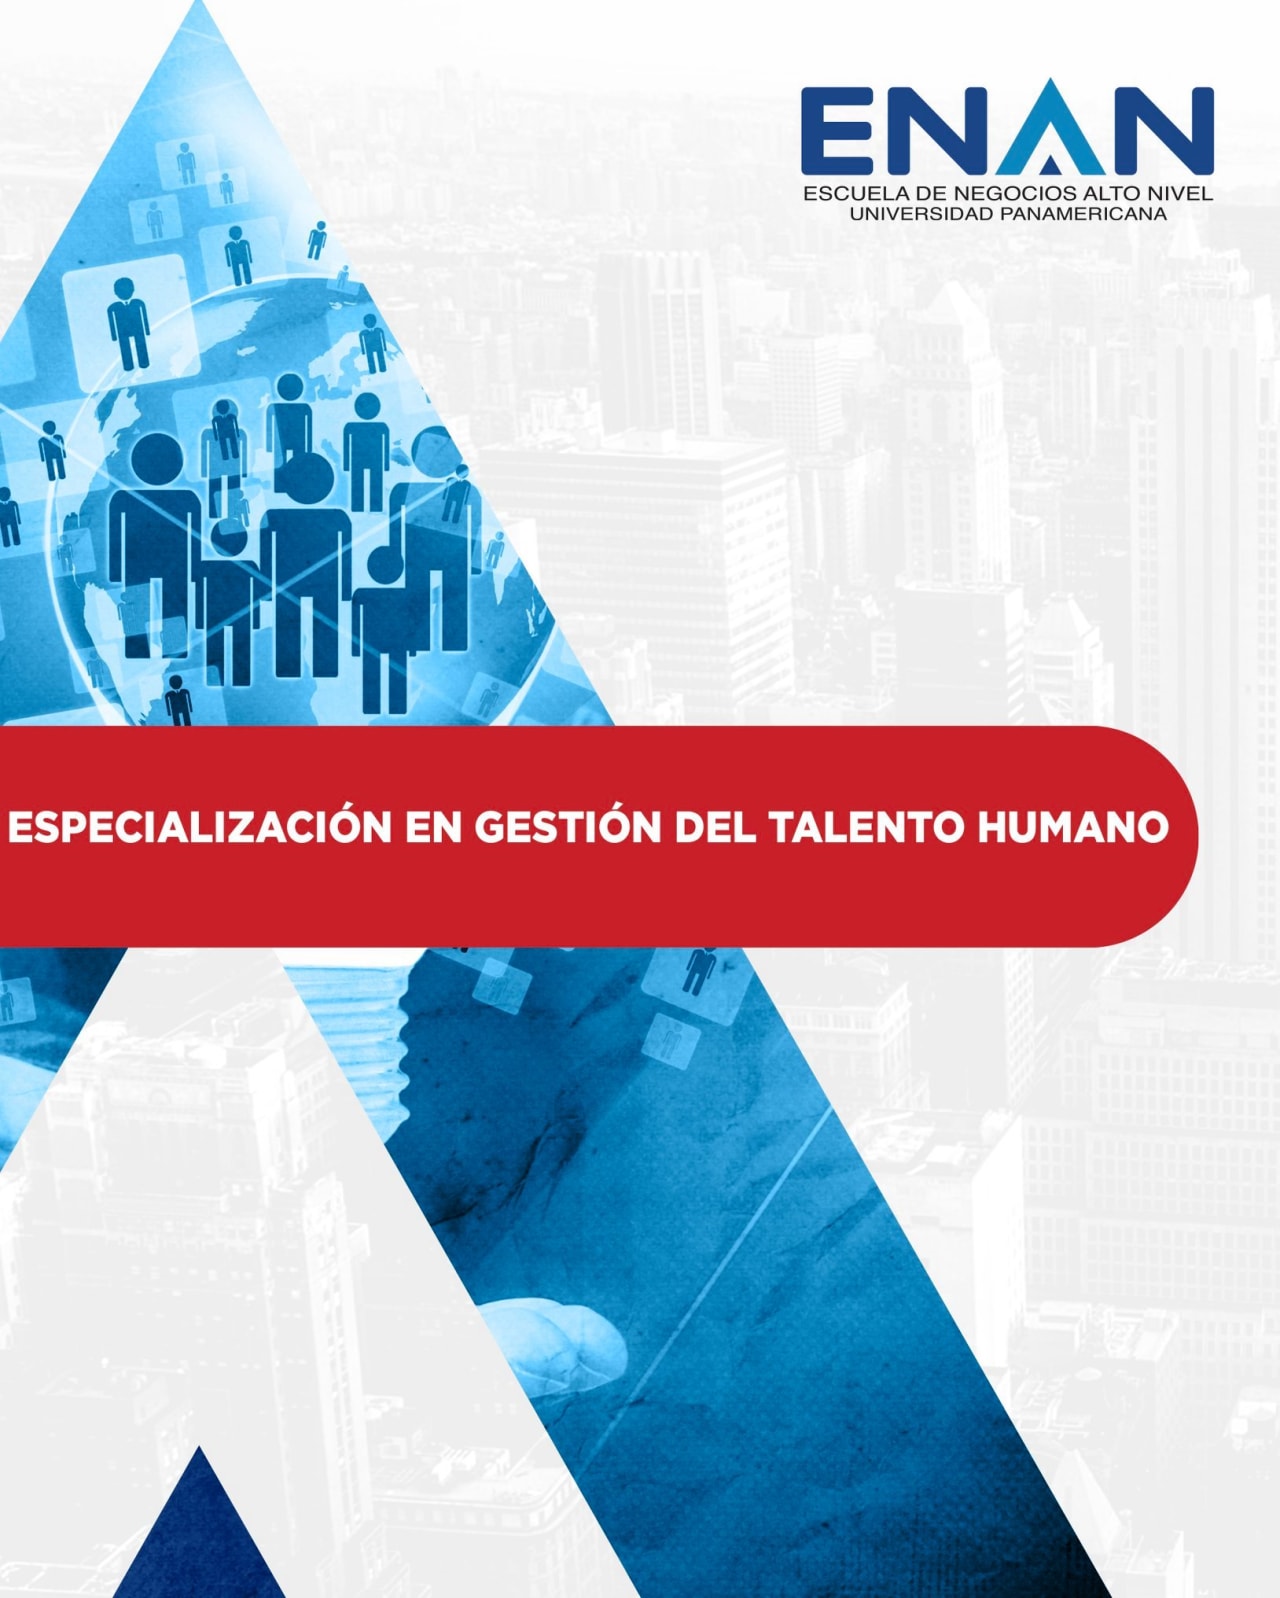 Escuela de Negocios Alto Nivel - Universidad Panamericana de Guatemala 人材管理の専門分野